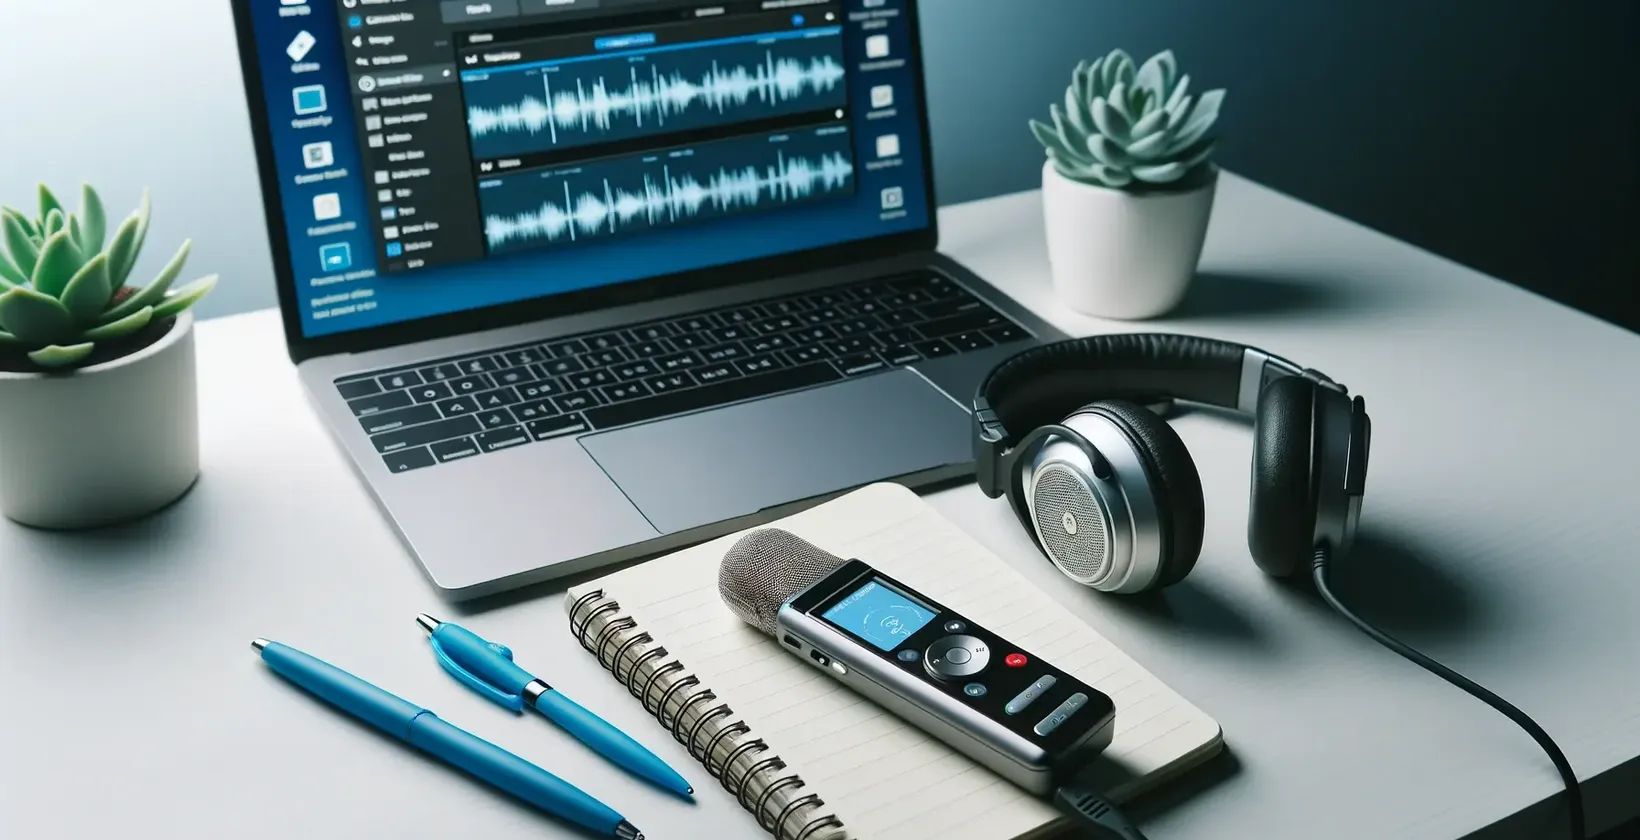 Ruang kerja dengan laptop yang menunjukkan bentuk gelombang audio, menyarankan tugas suara.